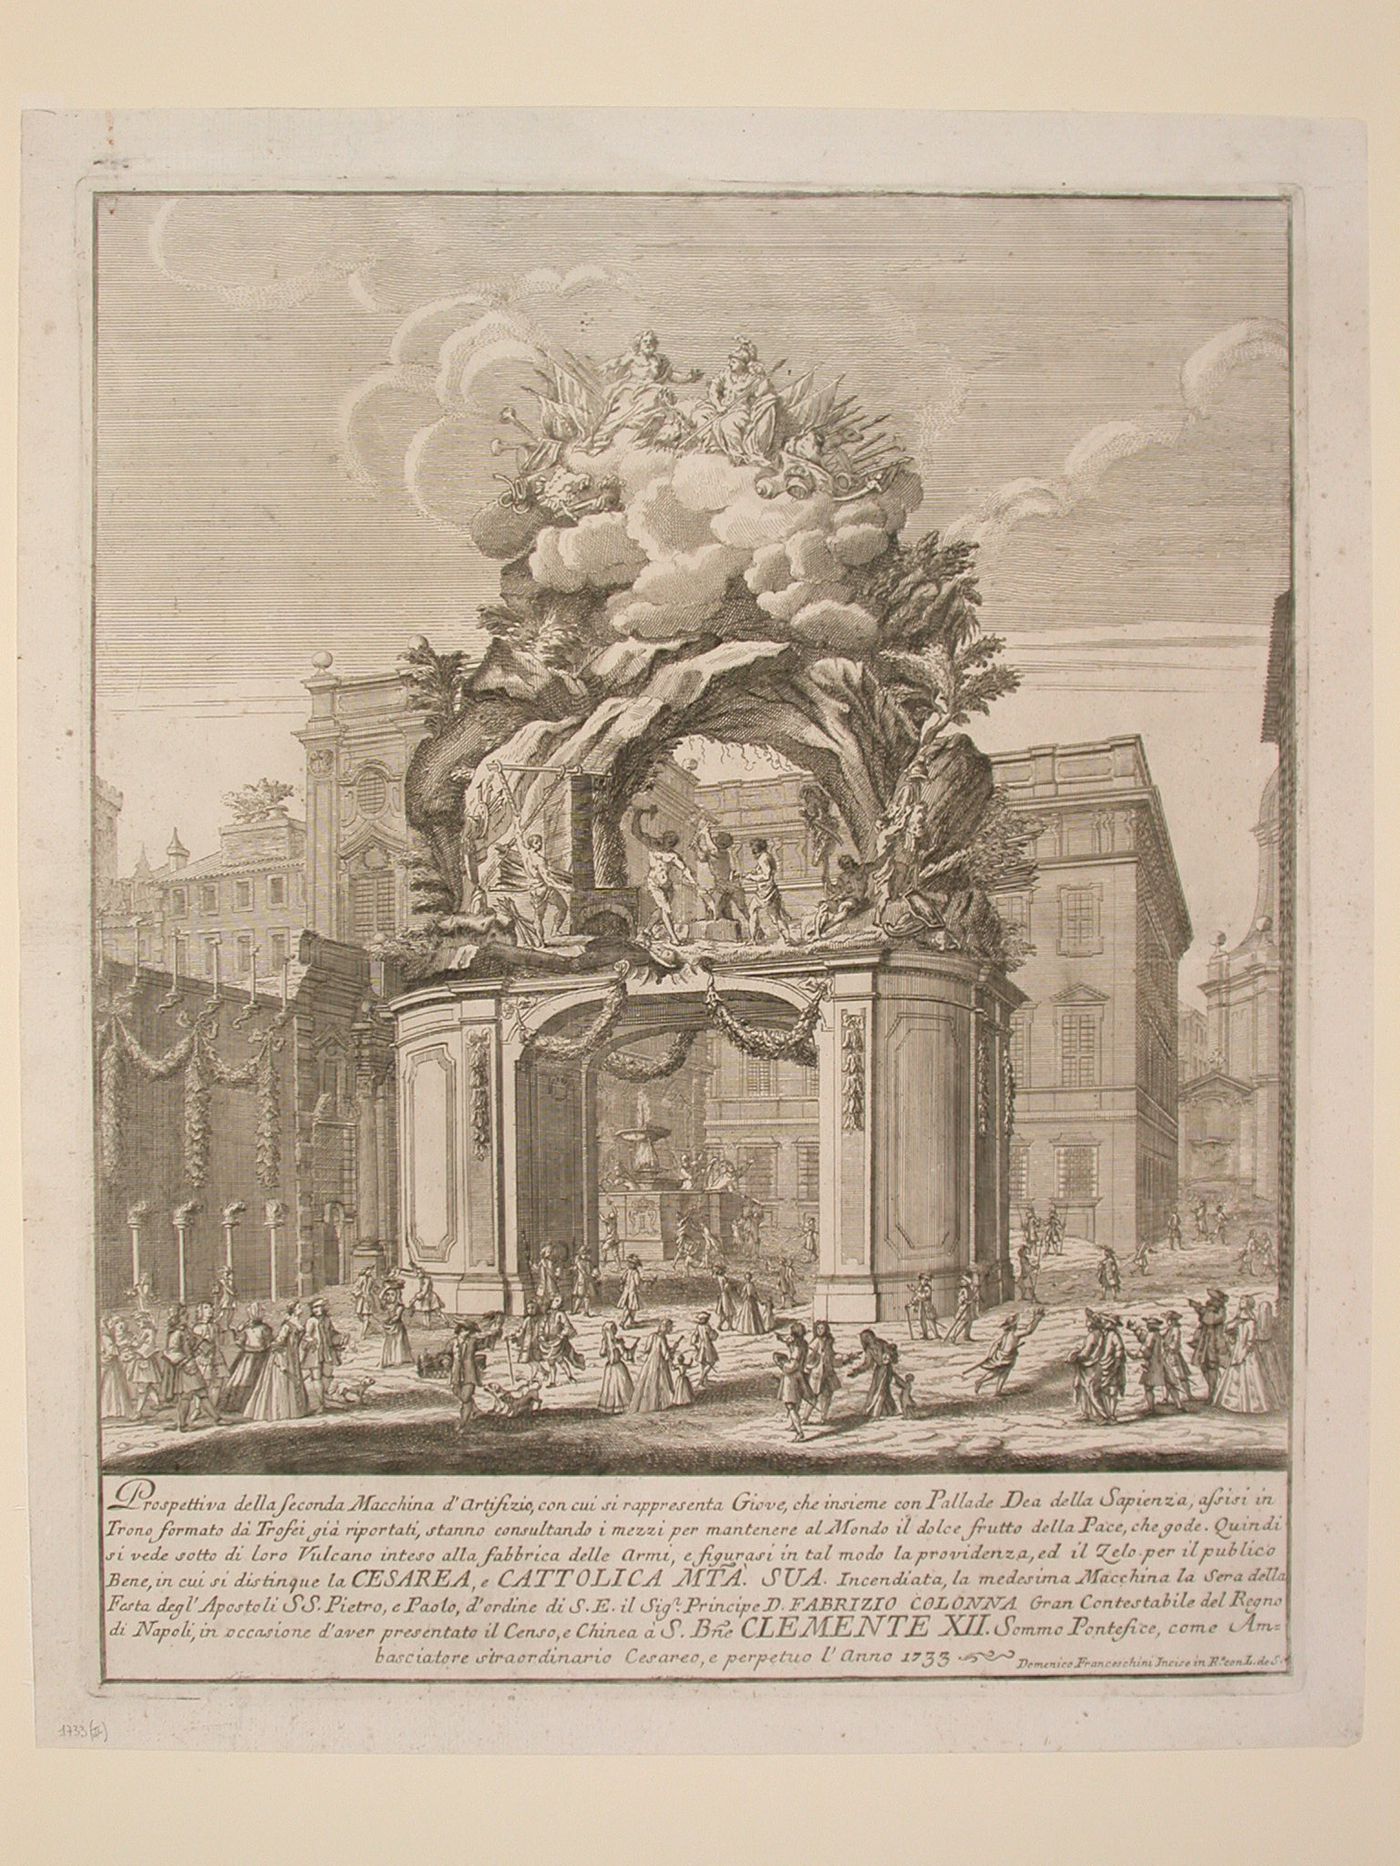 Etching of Michetti's design for the "seconda macchina" of 1733